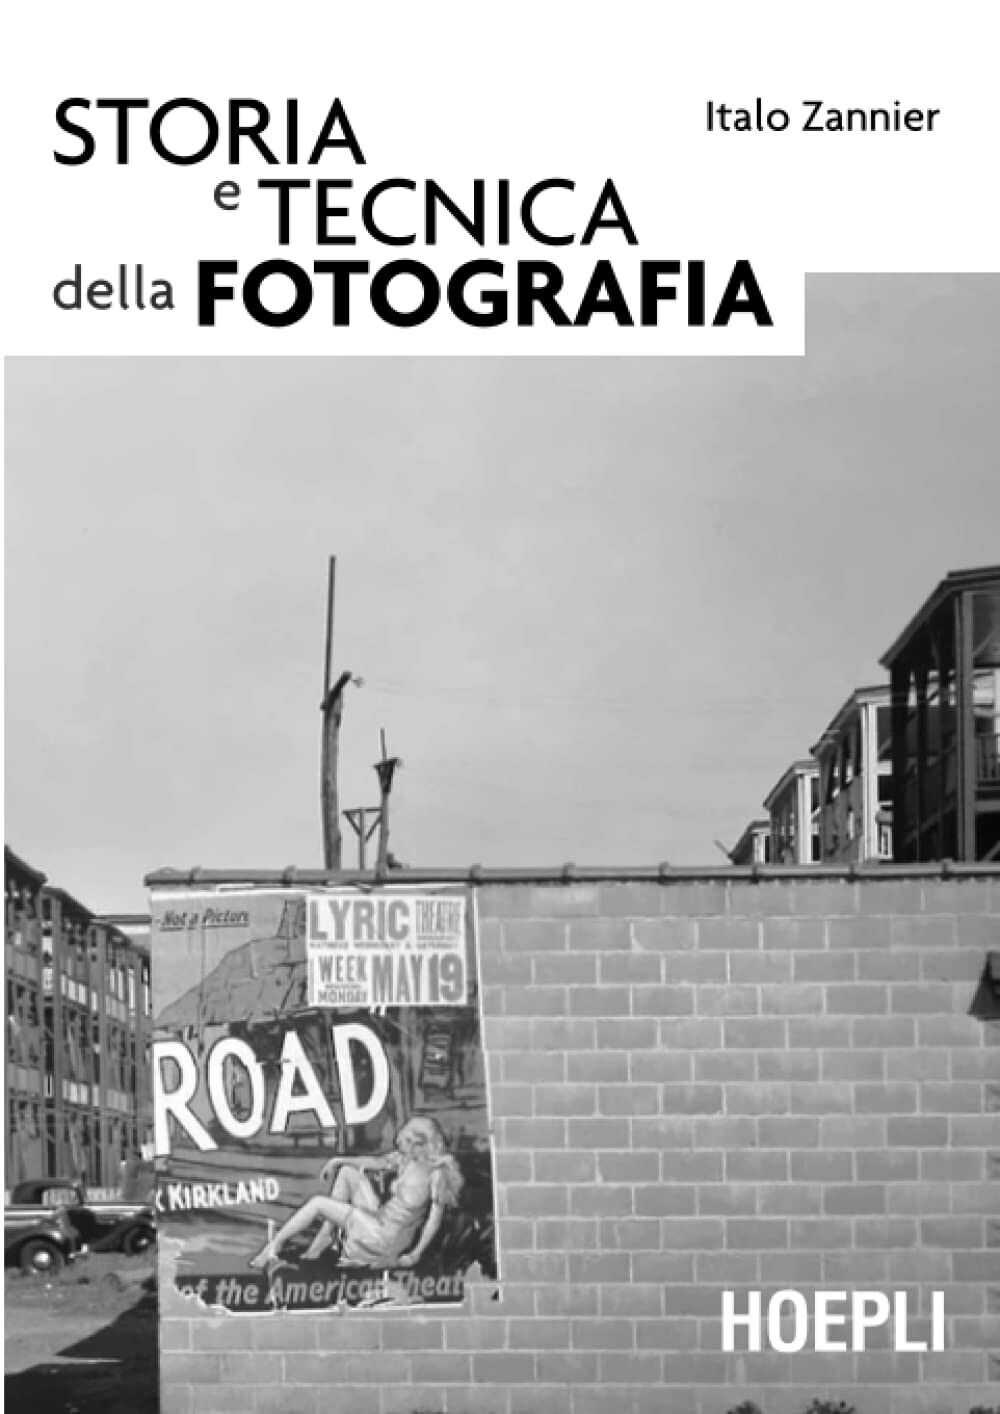 Storia e tecnica della fotografia - Italo Zannier - Hoepli, 2009 libro usato